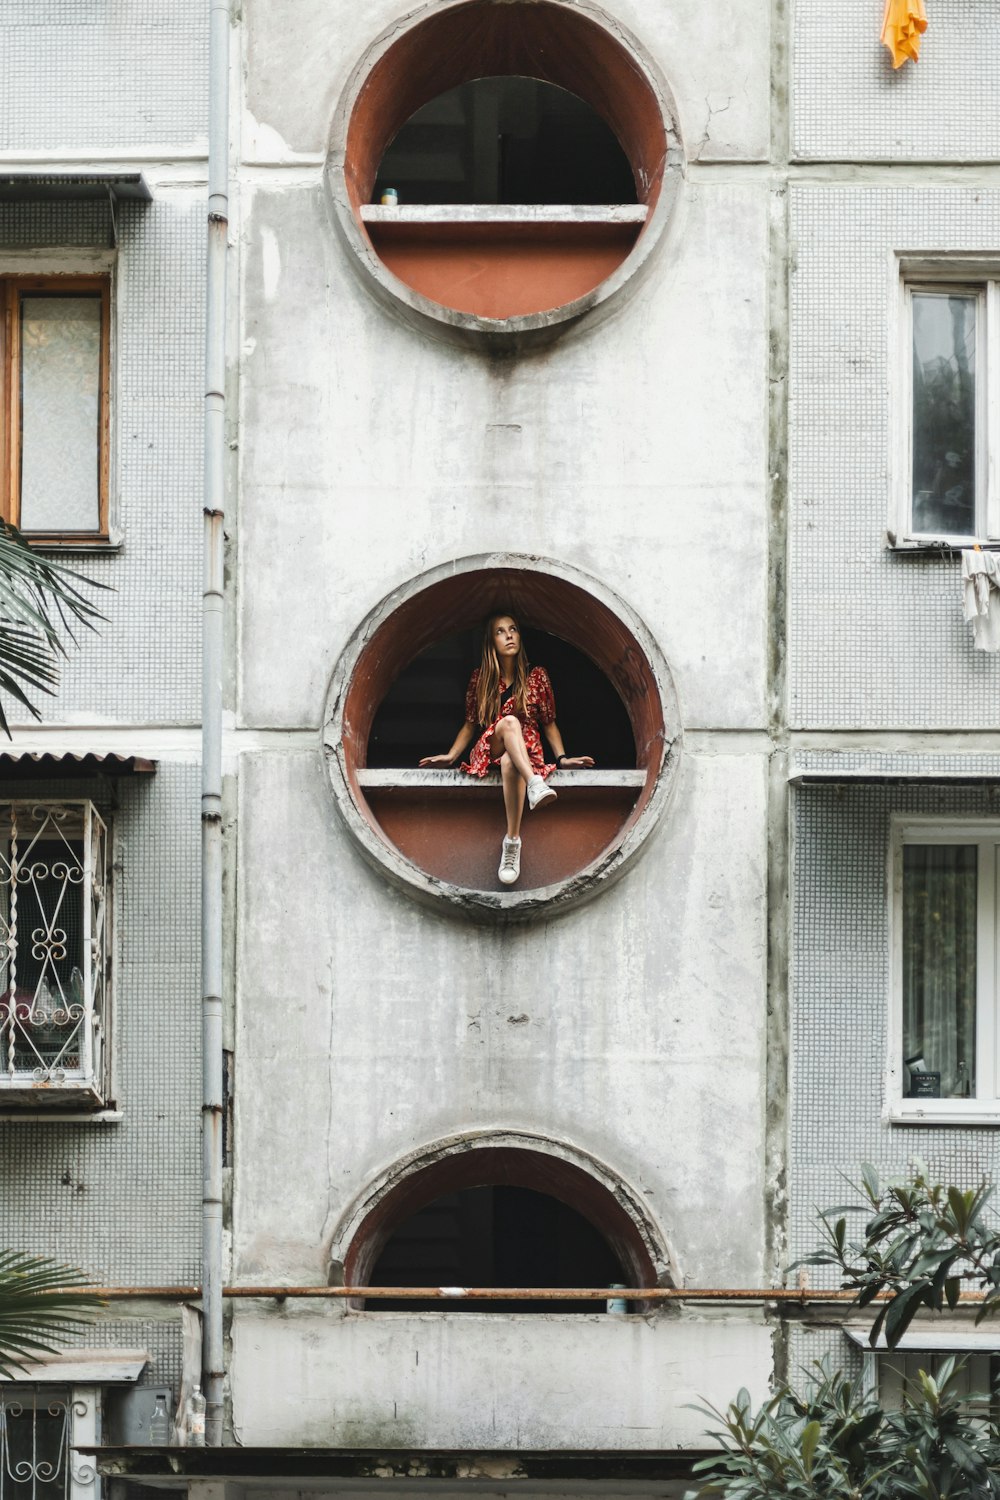 Eine Frau sitzt in einem runden Fenster eines Gebäudes